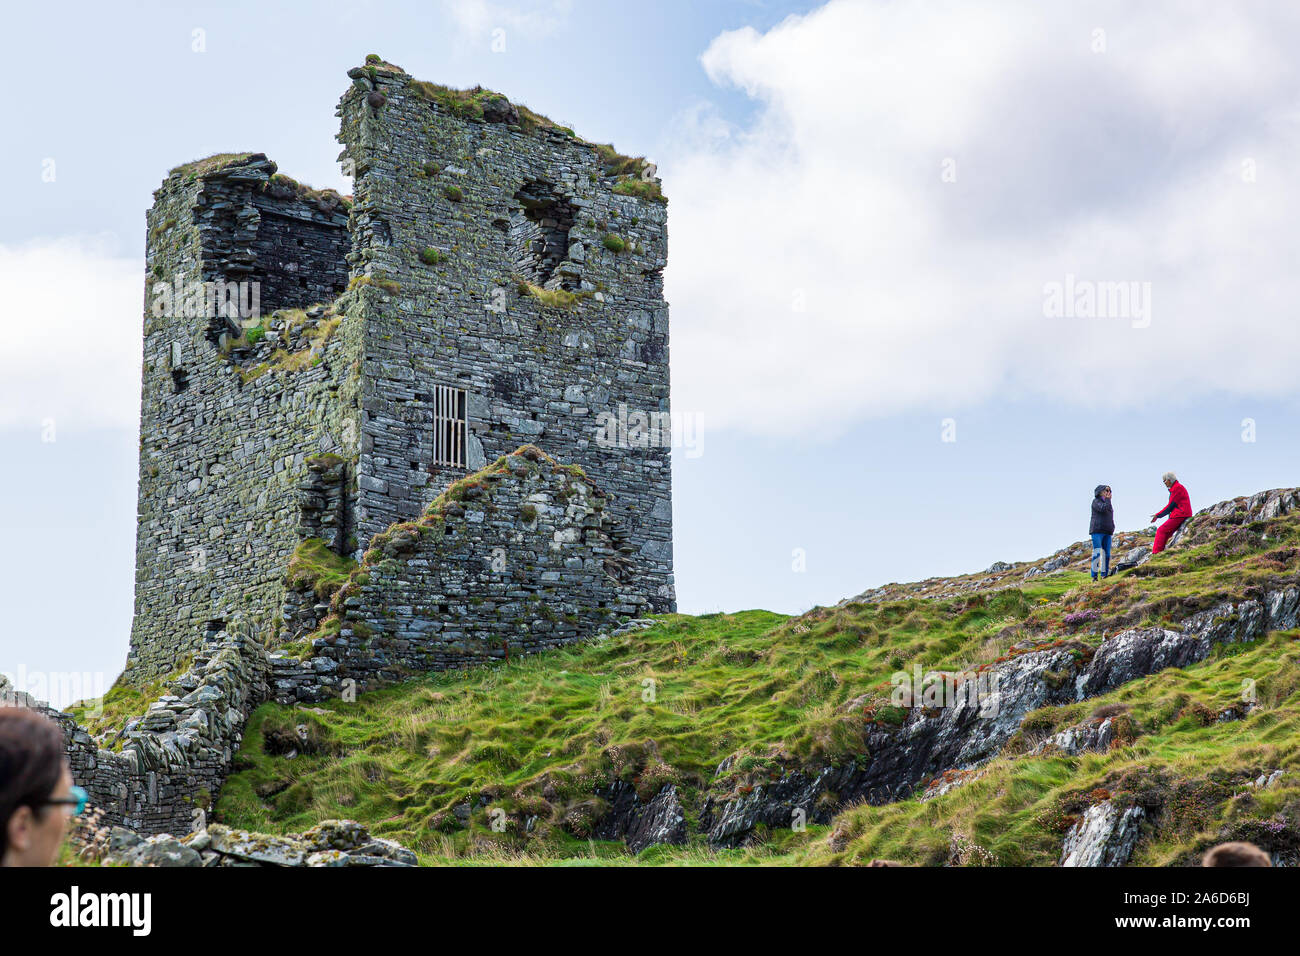 Pintorescas ruinas de tres castillos de cabeza o Dunlough castillo situado en la cima de los acantilados en el extremo norte de la península de Mizen. Paisajes irlandeses. Foto de stock